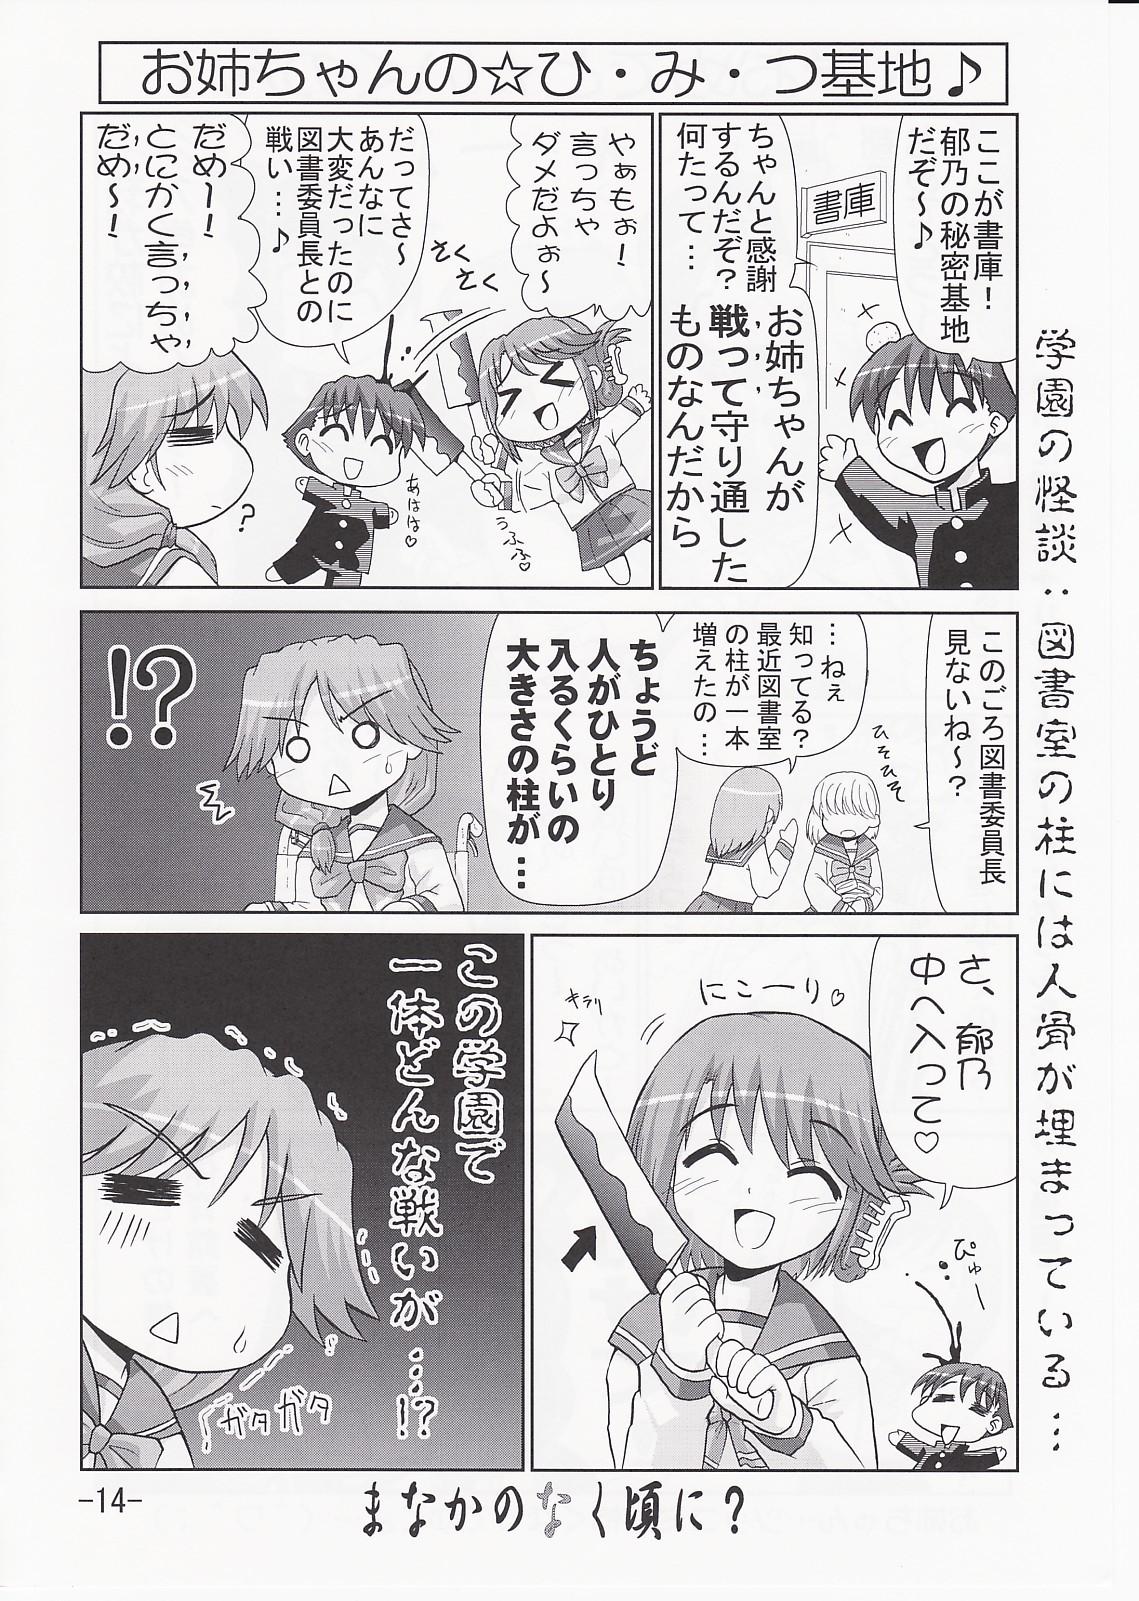 Ikunon Manga 3 12